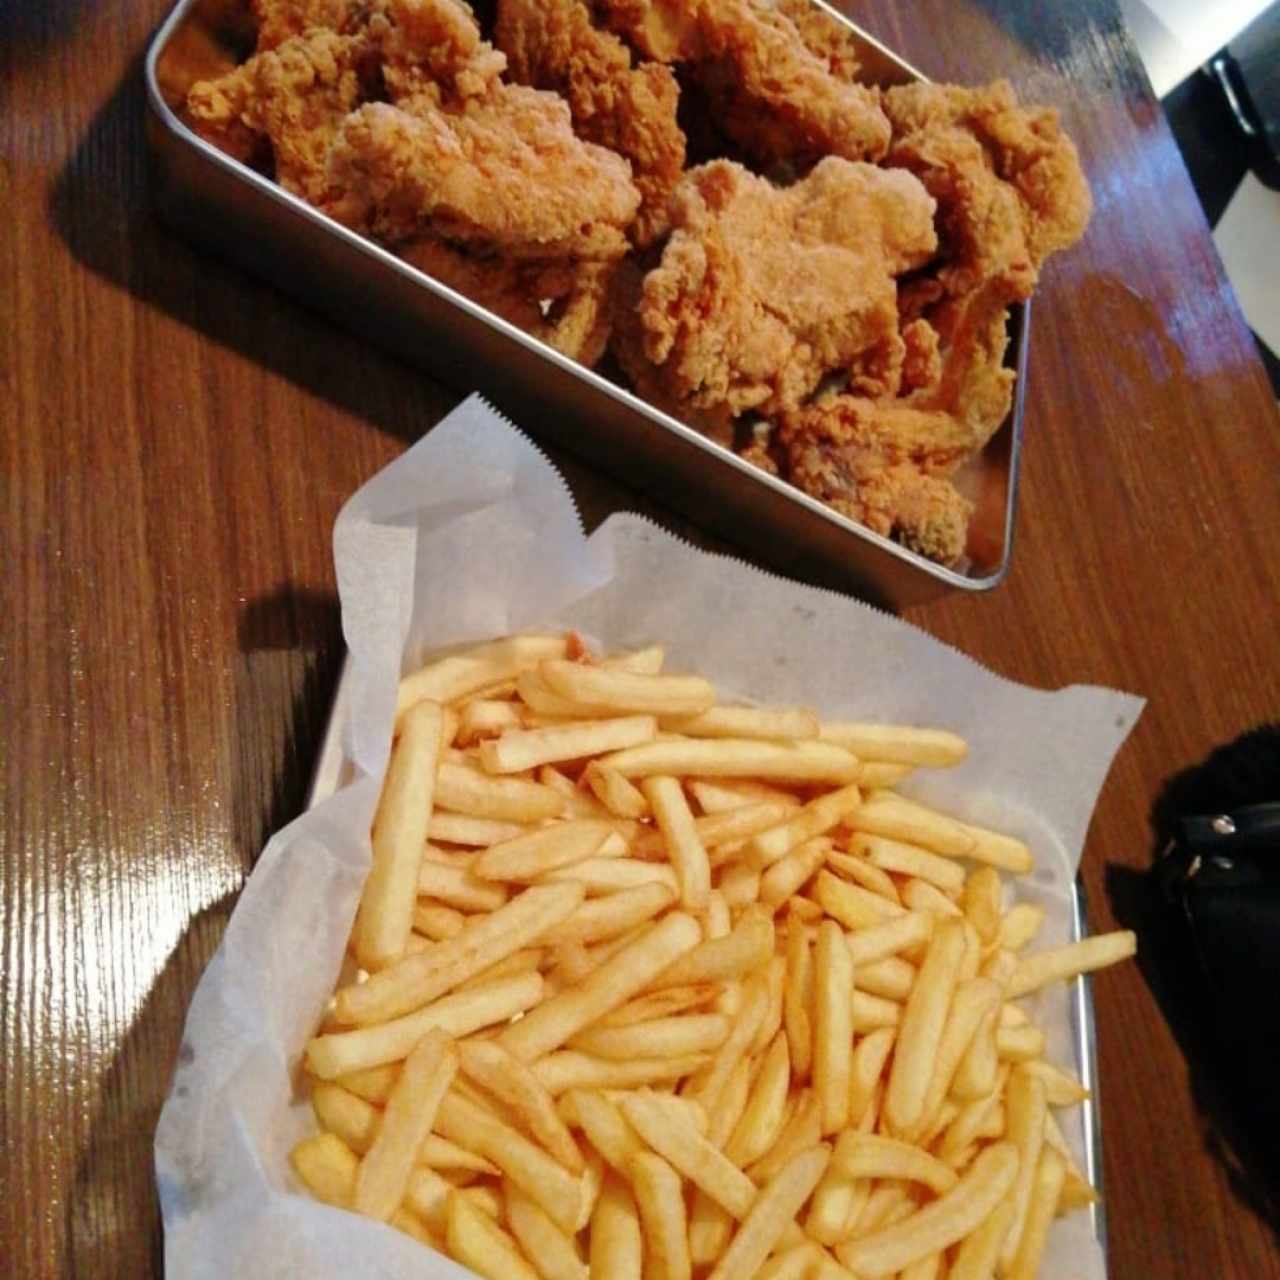 fried chicken/pollo frito